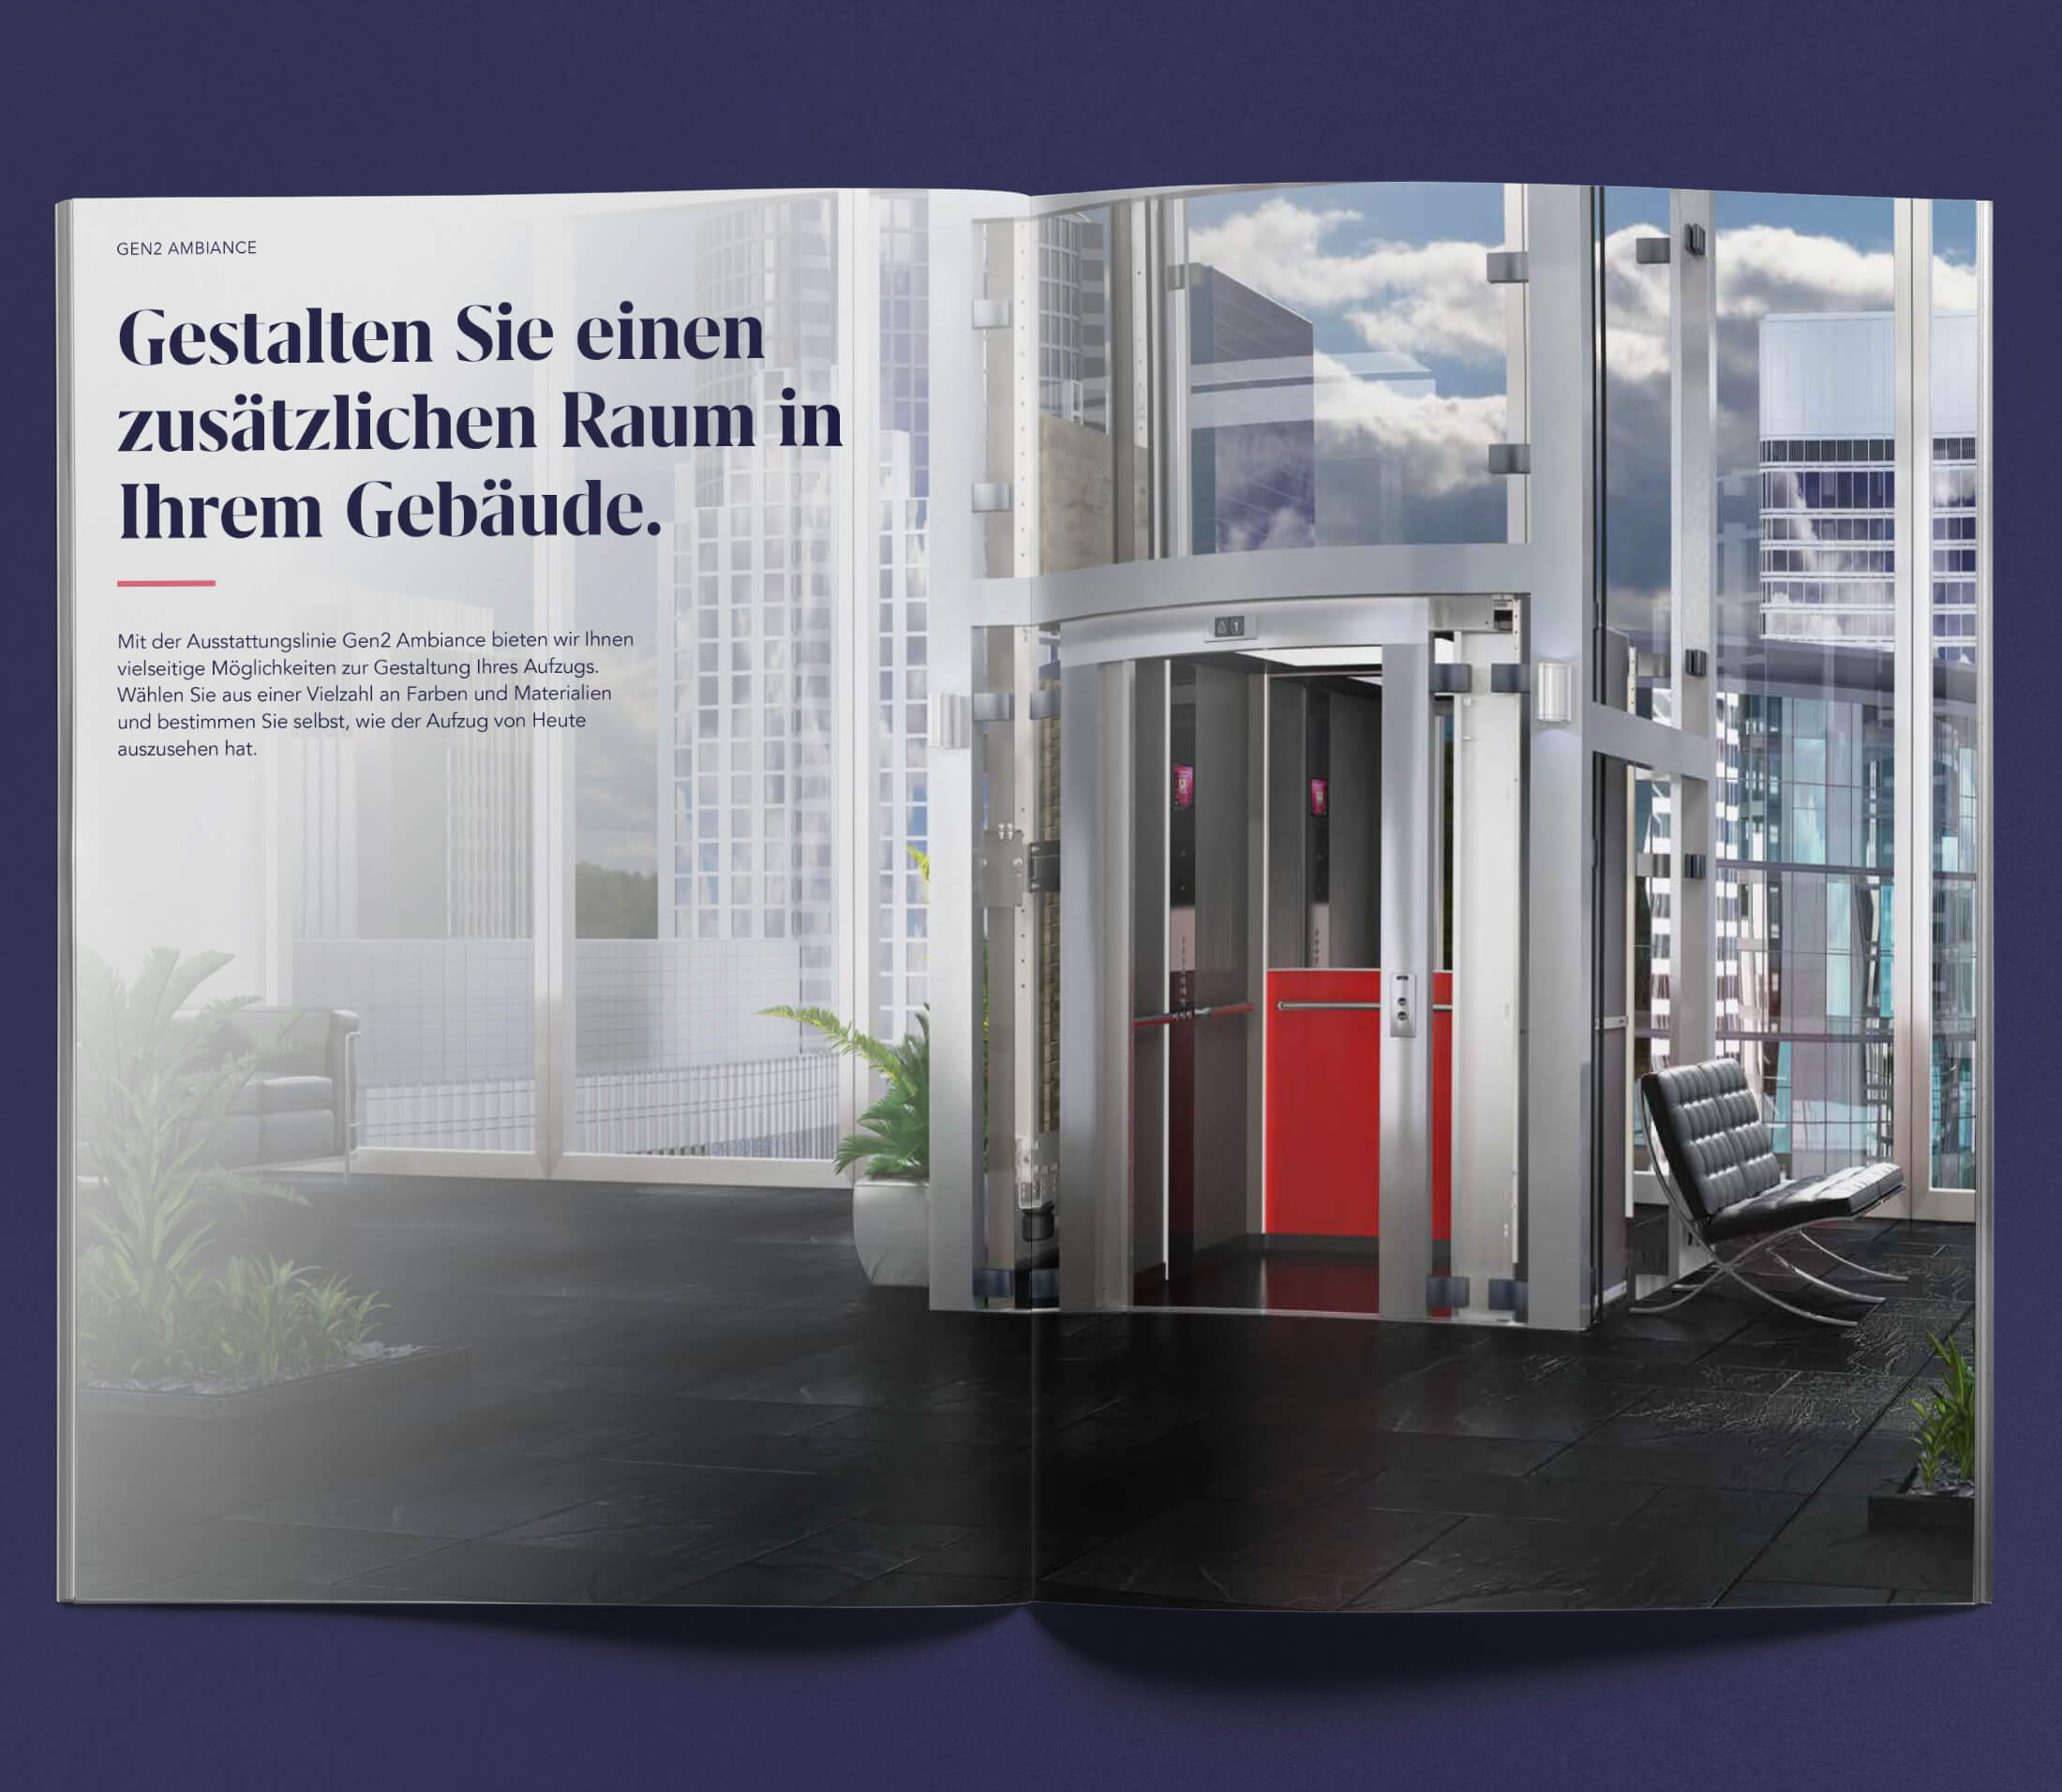 Otis Editorial Design Doppelseite mit vollflächigem Bild eines modernes Aufzugs